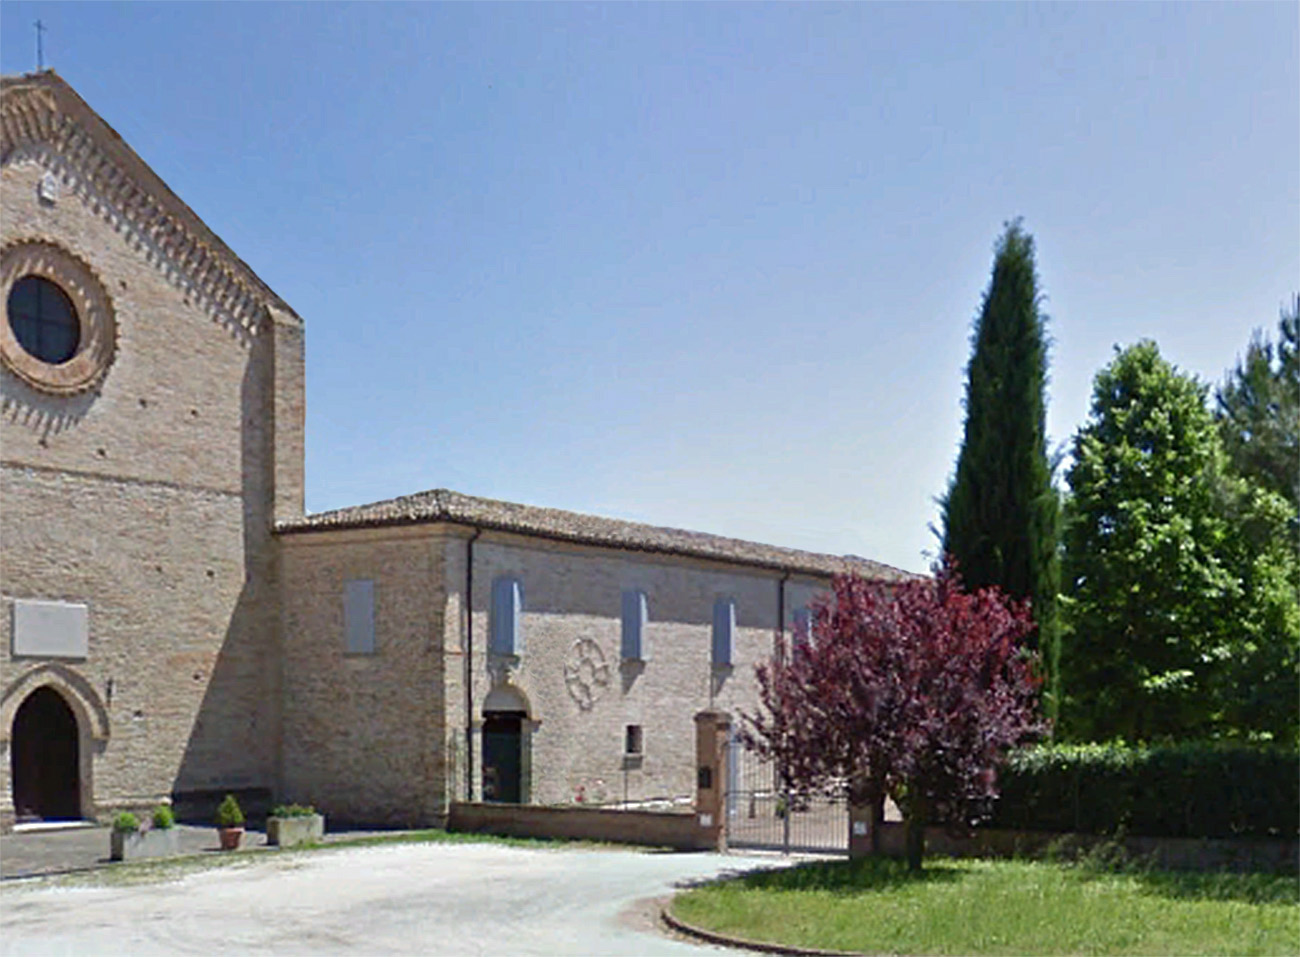 Convento di S. Francesco in Rovereto (convento, francescano) - Colli al Metauro (PU)  (XV)